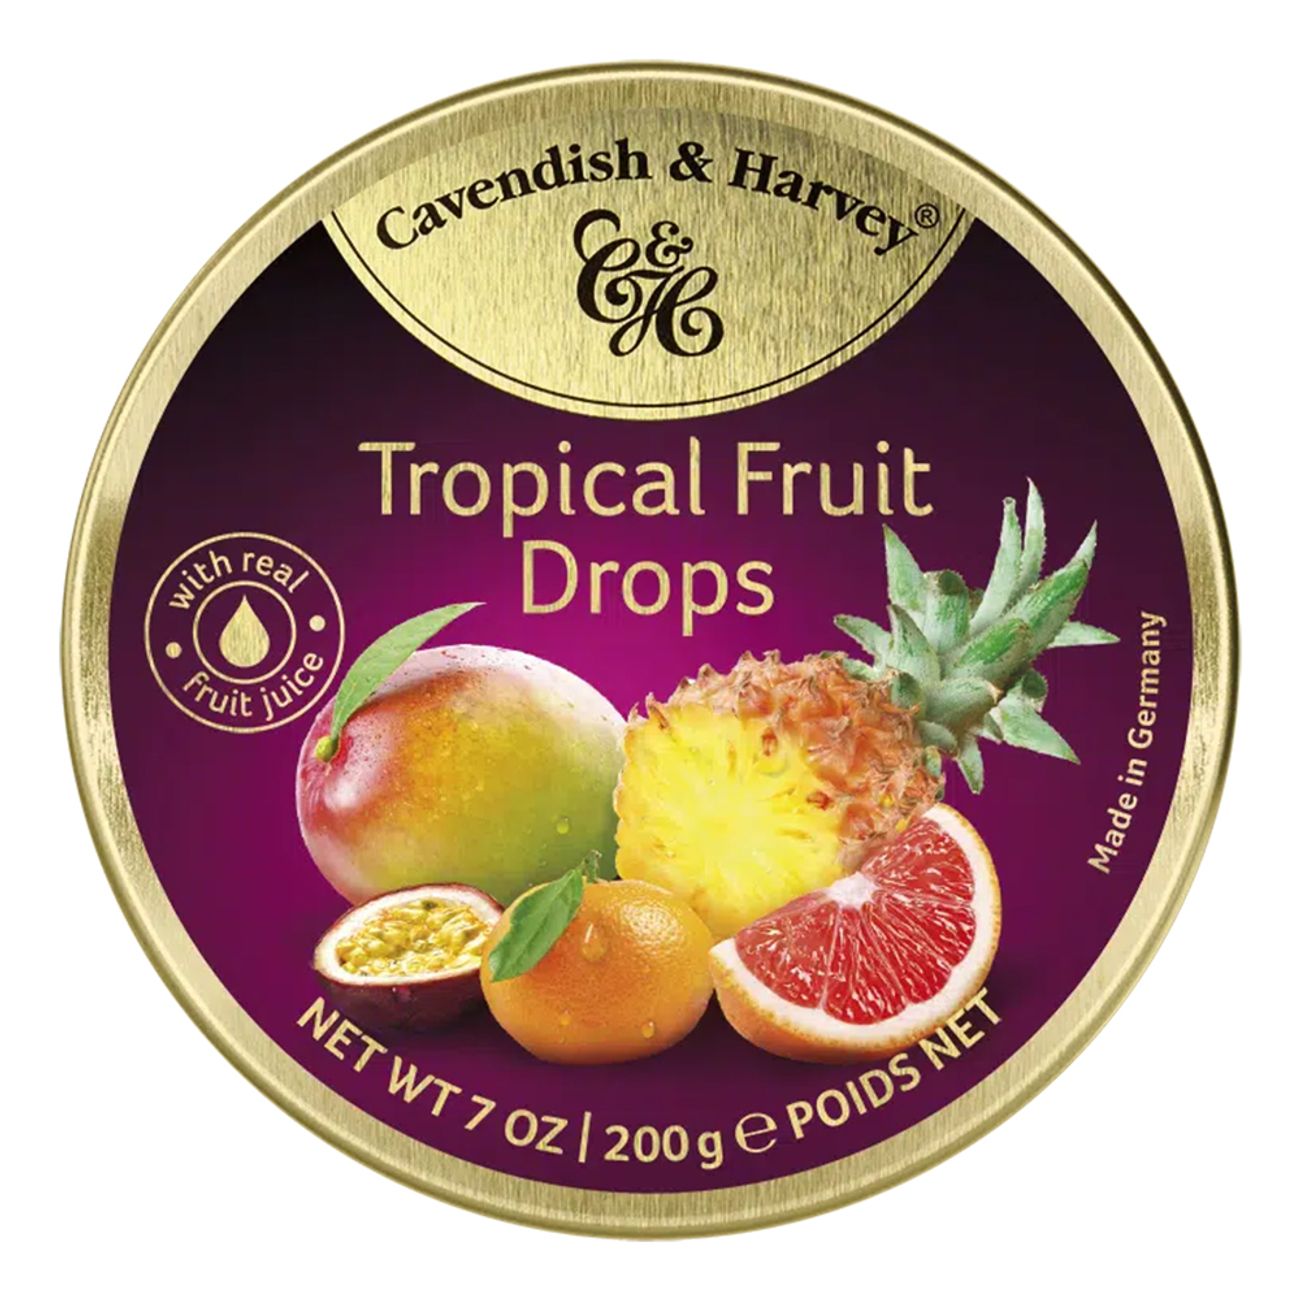 cavendish-tropical-fruit-drops-89785-1